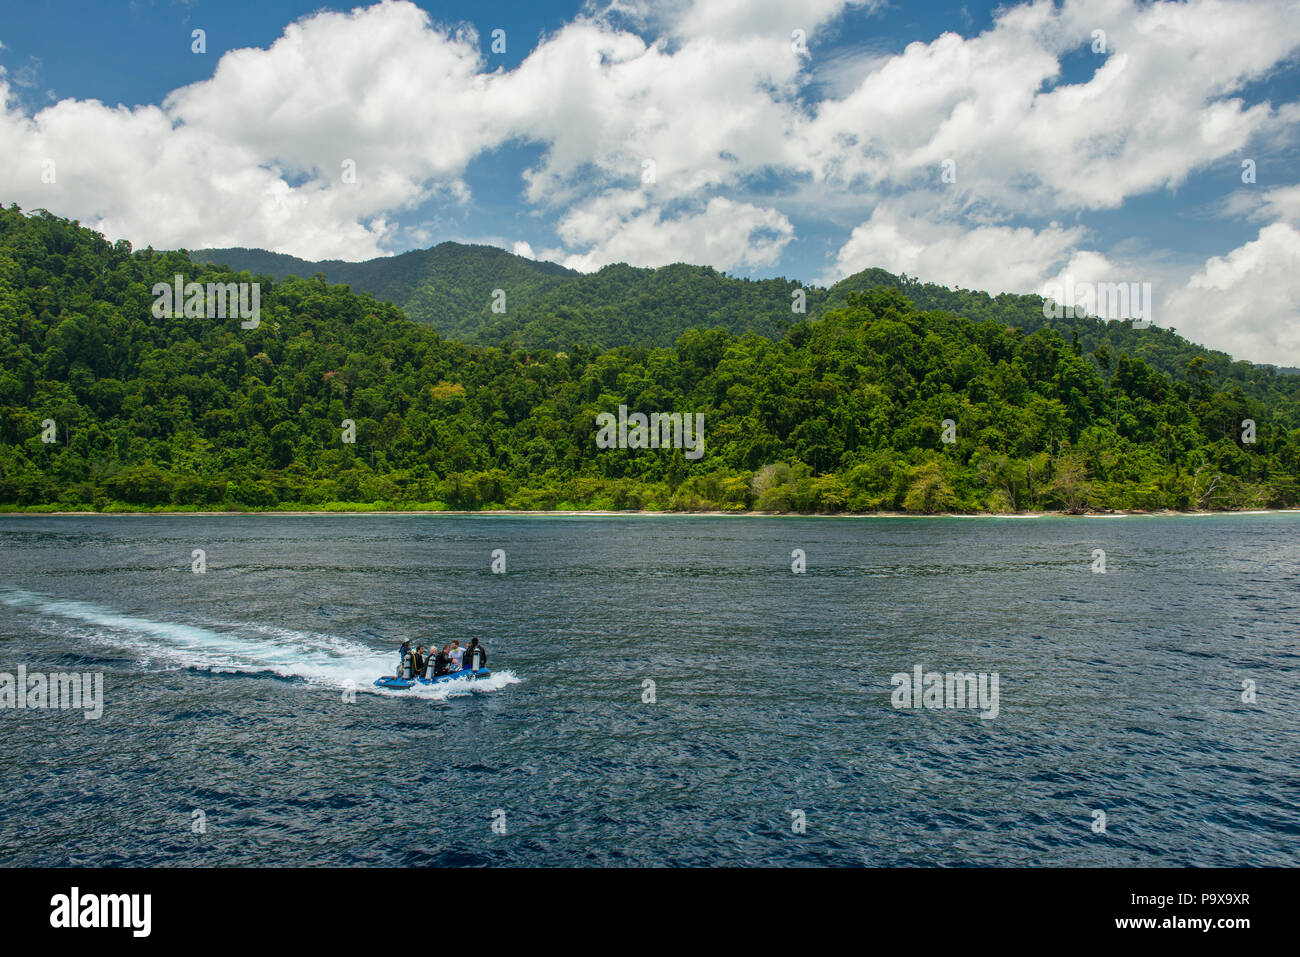 Eine kleine Speedboot mit Tauchern an Bord zu einem Tauchplatz, mit grünen Waldes auf einer Insel im Hintergrund und blauen Himmel und Wolken. Stockfoto